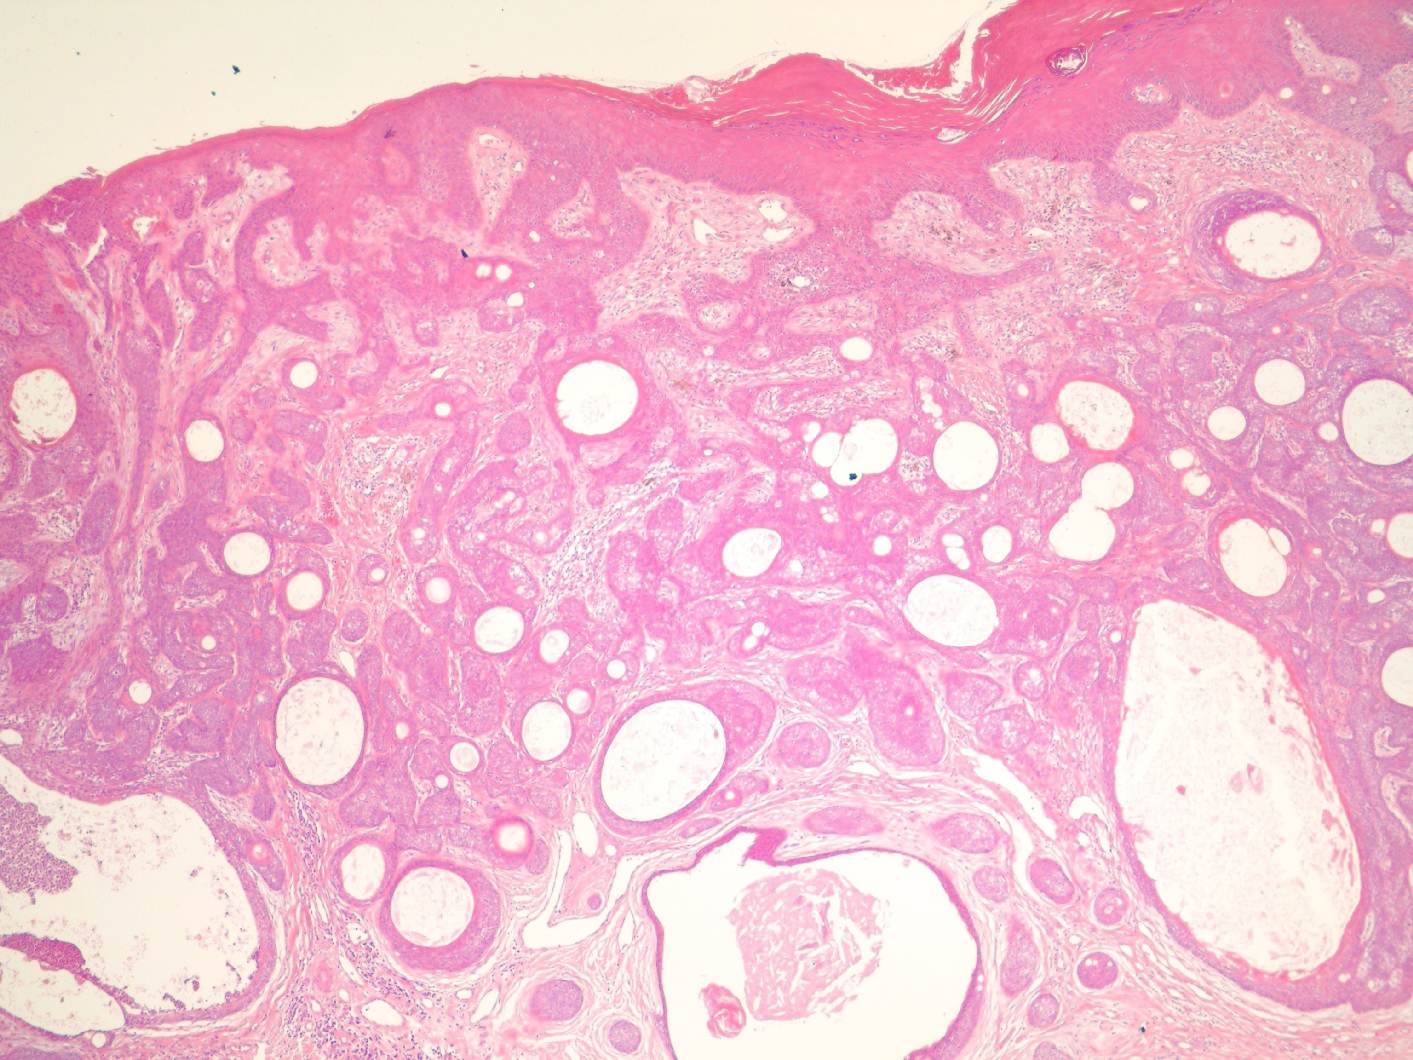 Imagen de Lesin ulcerada en mujer de 76 aos / Ulcerated lesion in 76 y-o female.